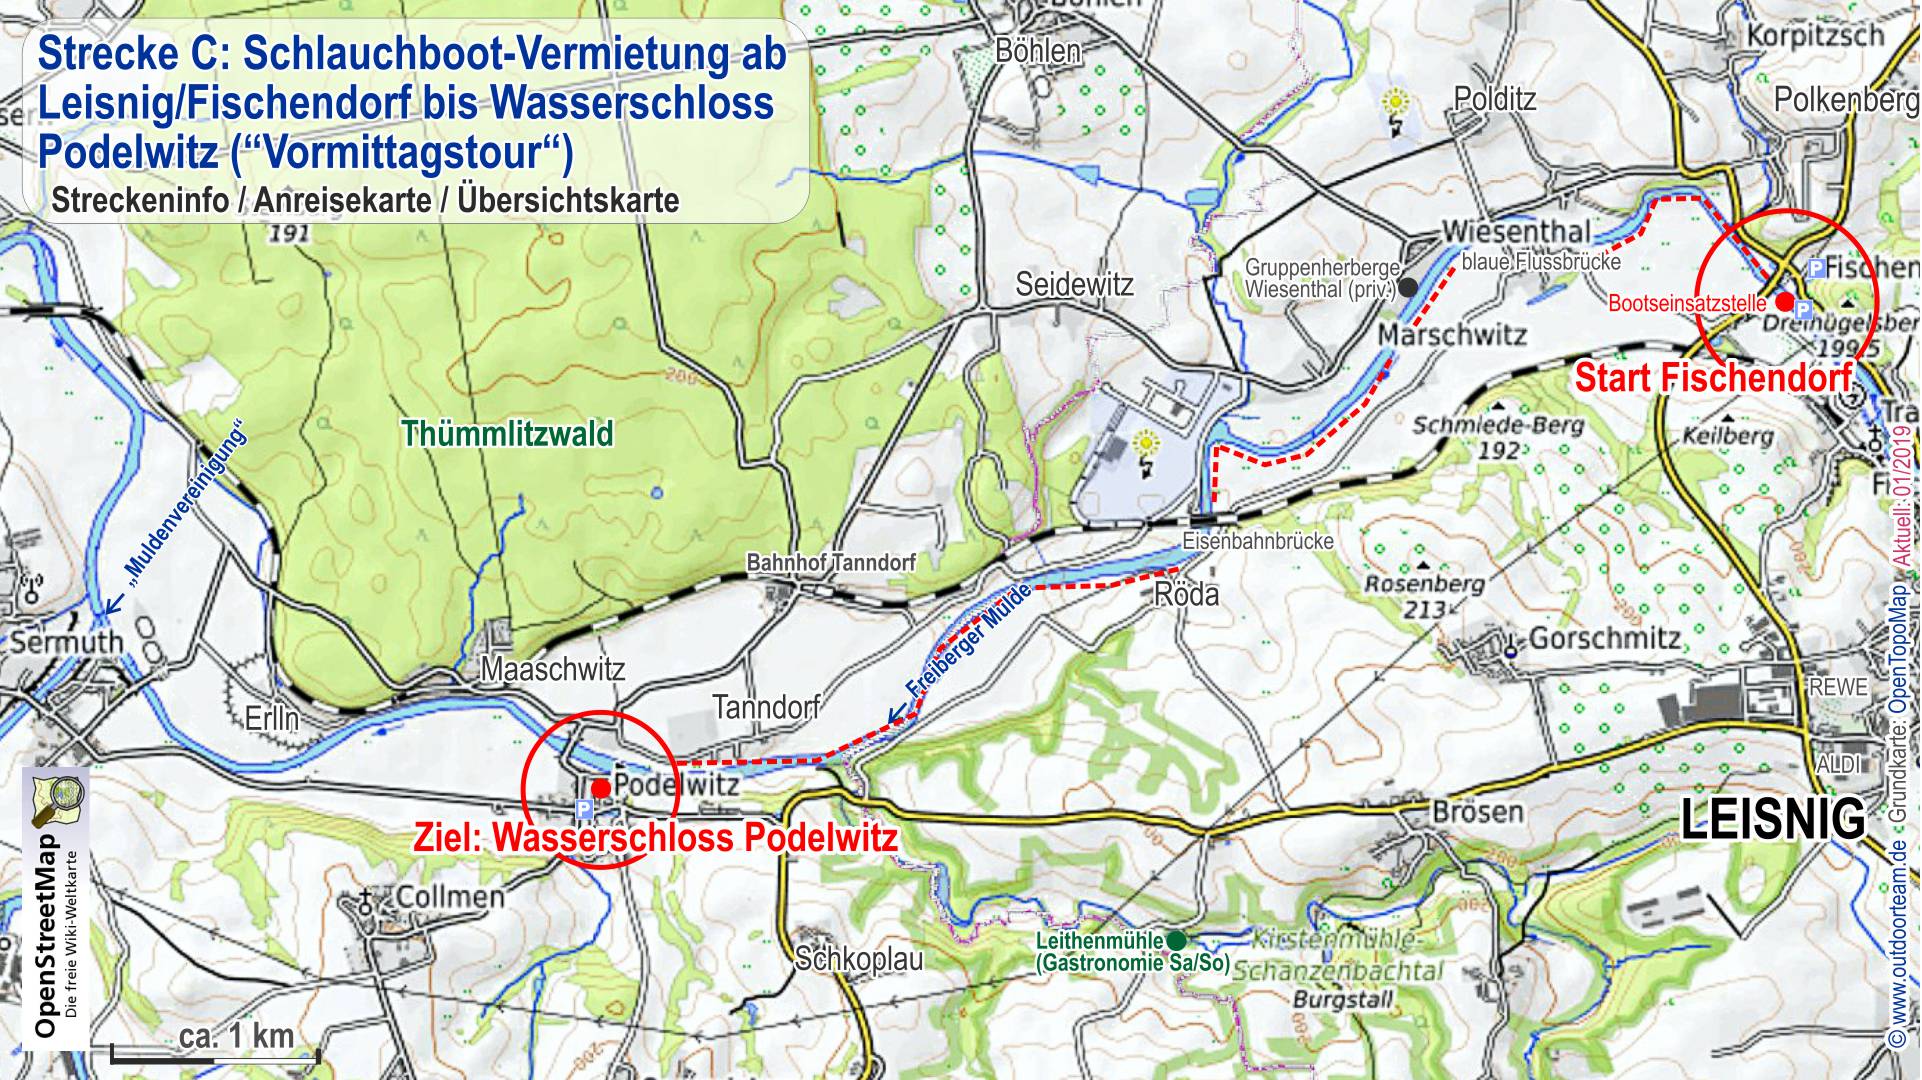 Detailkarte der Schlauchboot- Vermietung Strecke C Leisnig bis Wasserschloss Podelwitz auf der Freiberger Mulde in Sachsen